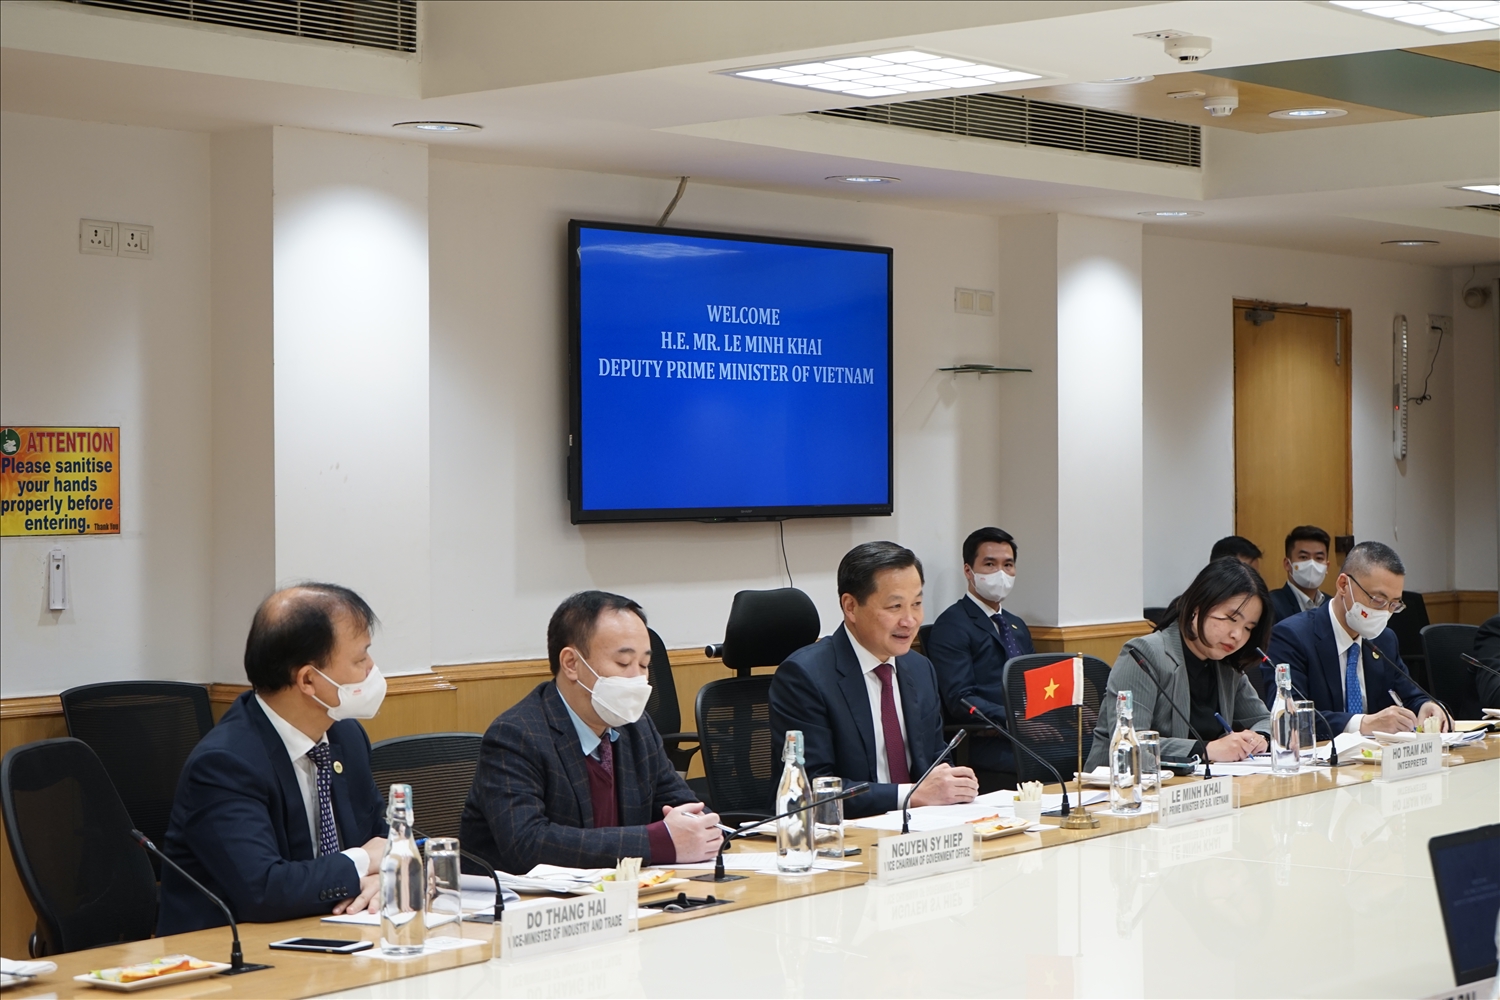 Phó Thủ tướng đồng tình với các đề xuất hợp tác của Viện Chuyển đổi số quốc gia Ấn Độ, đề nghị Viện thiết lập một cơ chế hợp tác với Bộ Kế hoạch và Đầu tư Việt Nam